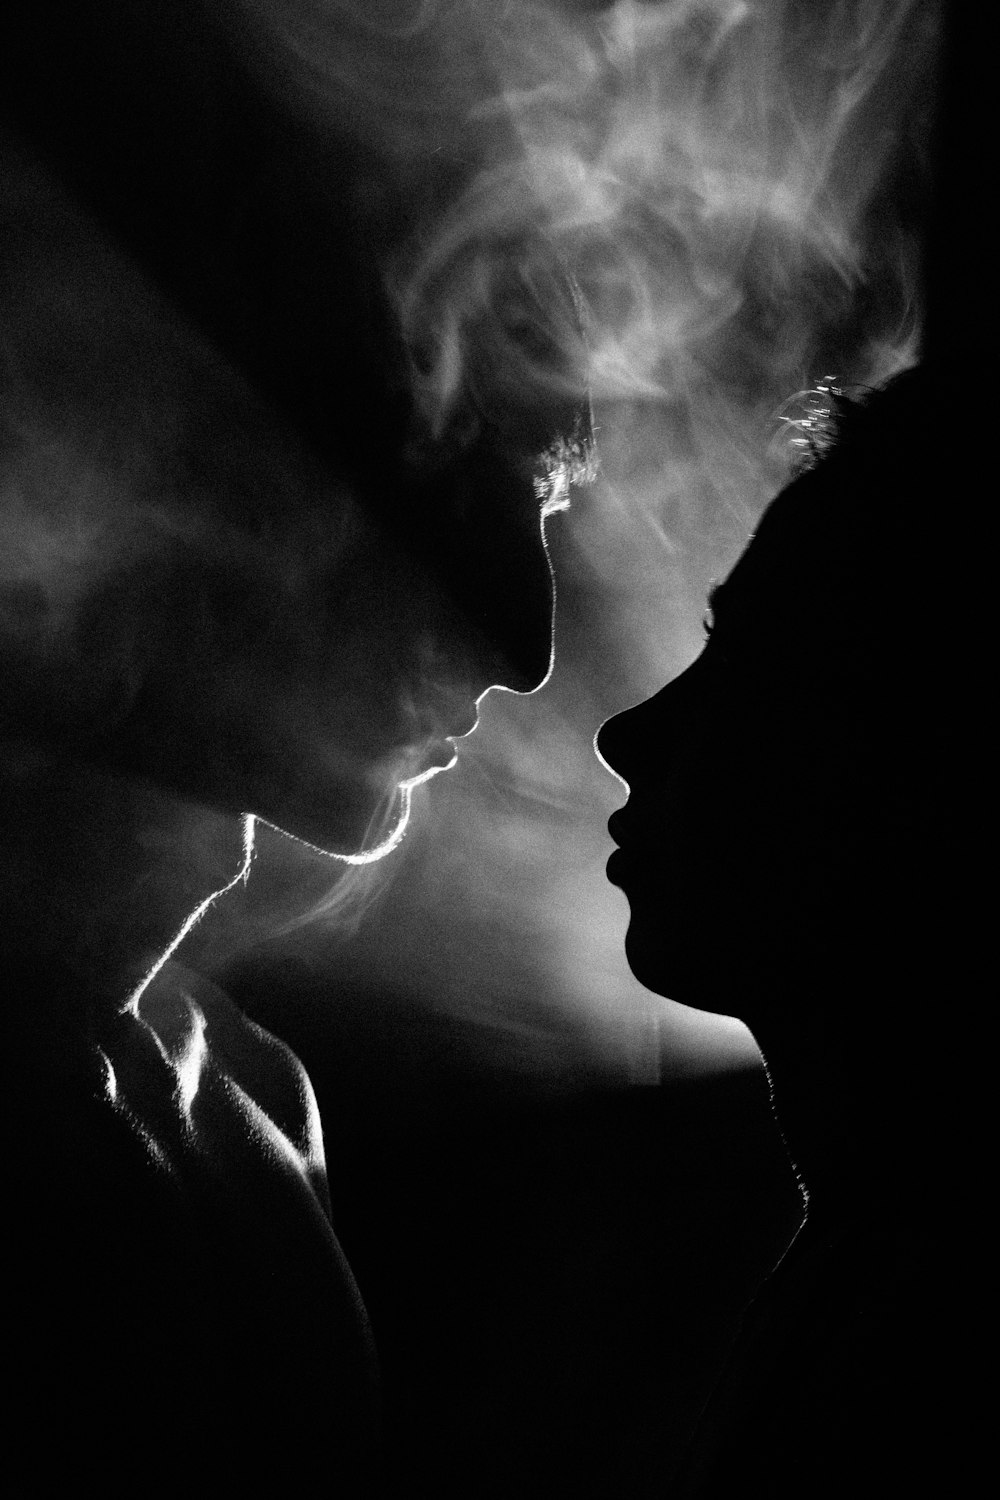 タバコを吸う女性の白黒写真